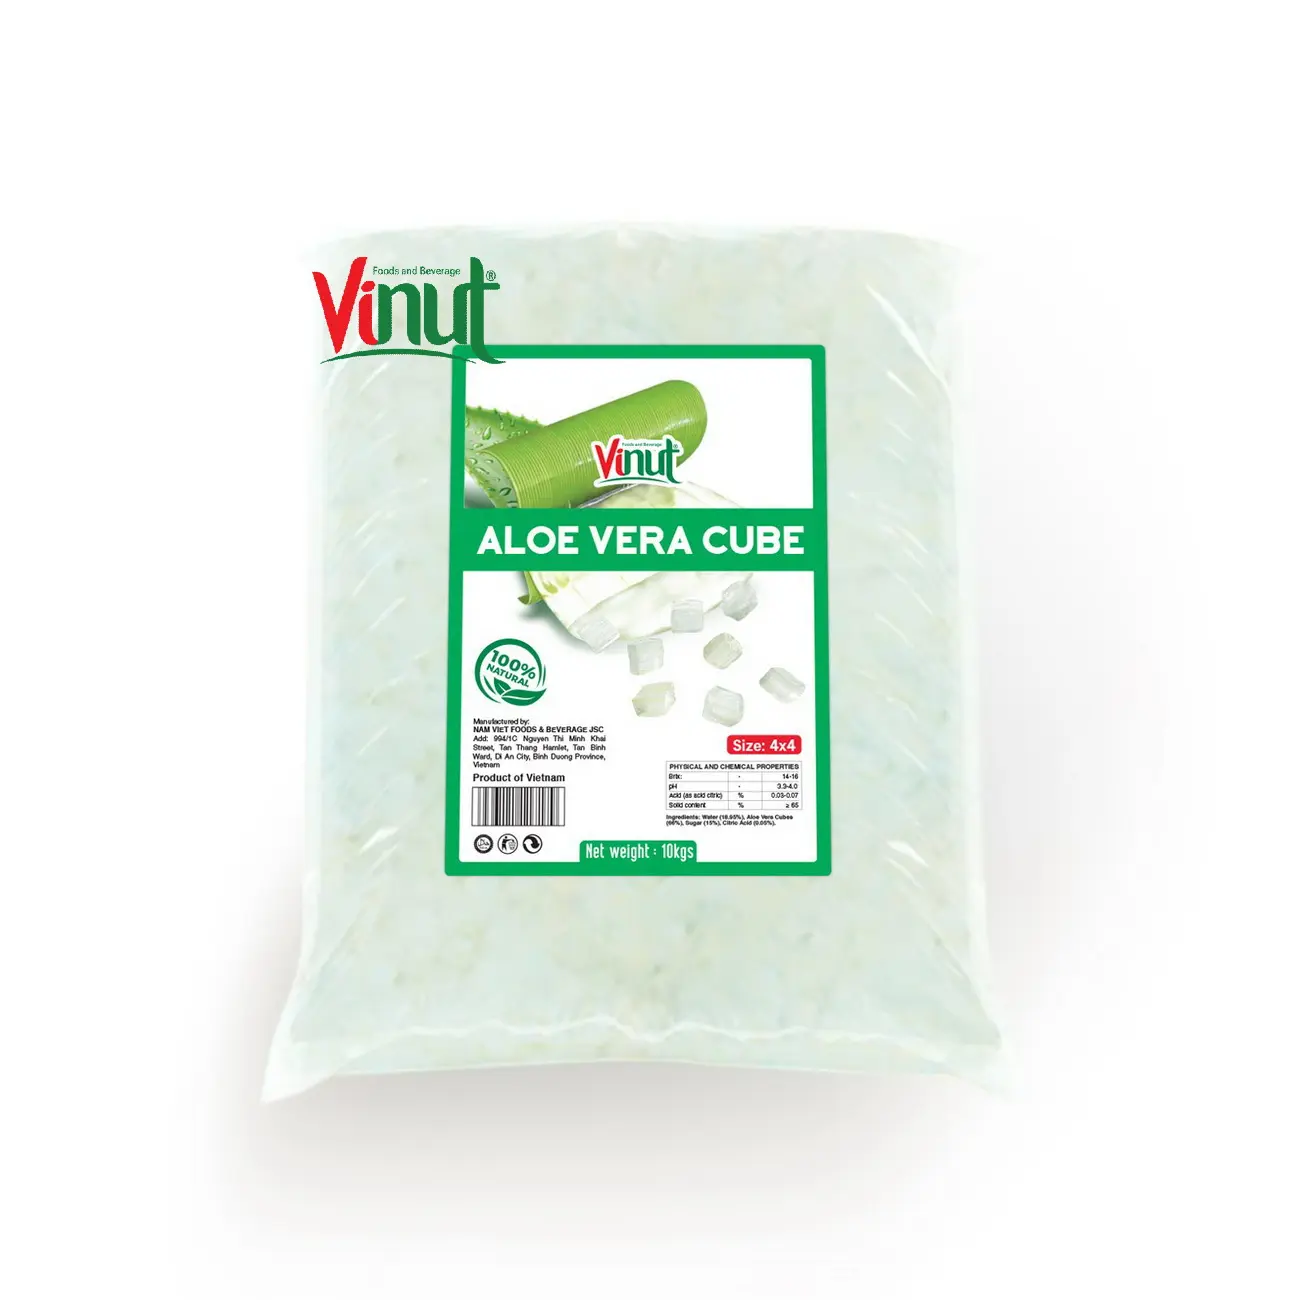 VINUT Aloe Vera - 10kg torba (4x4mm) premium kalite Aloe Vera küp 100% doğal tedarikçiler ve üreticileri